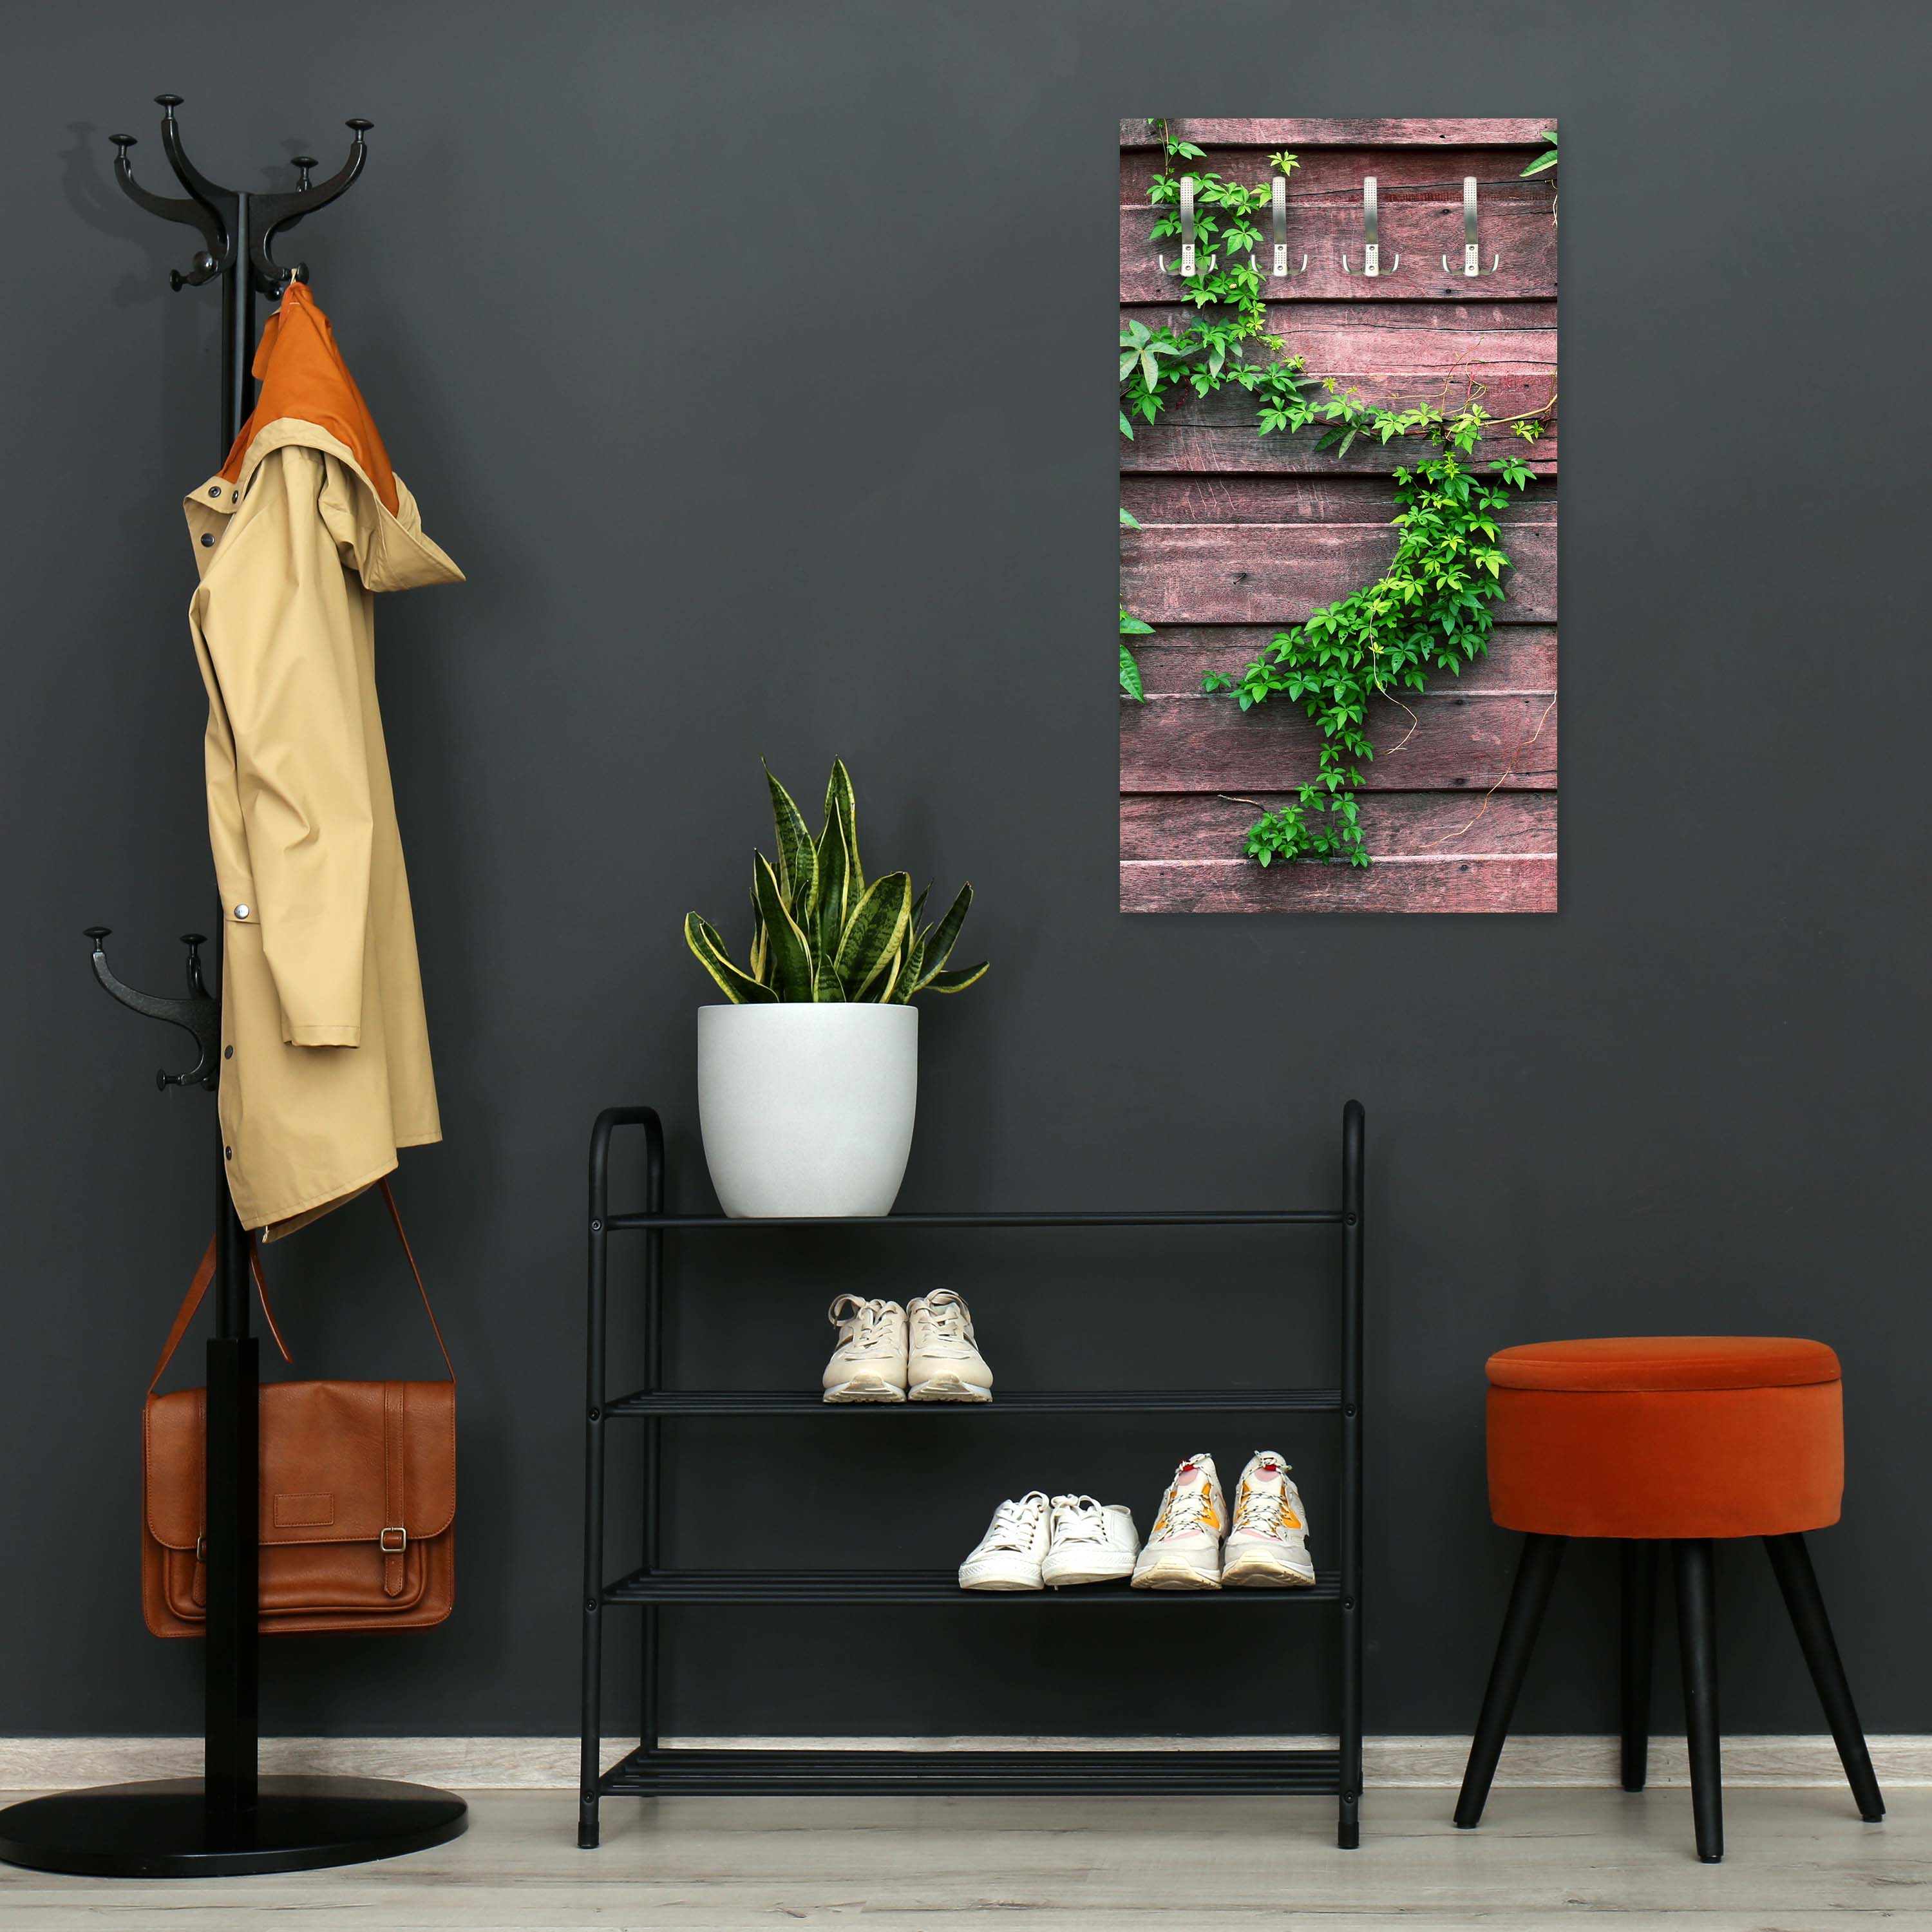 Garderobe Wand mit Kletterpflanze M1004 entdecken - Bild 3